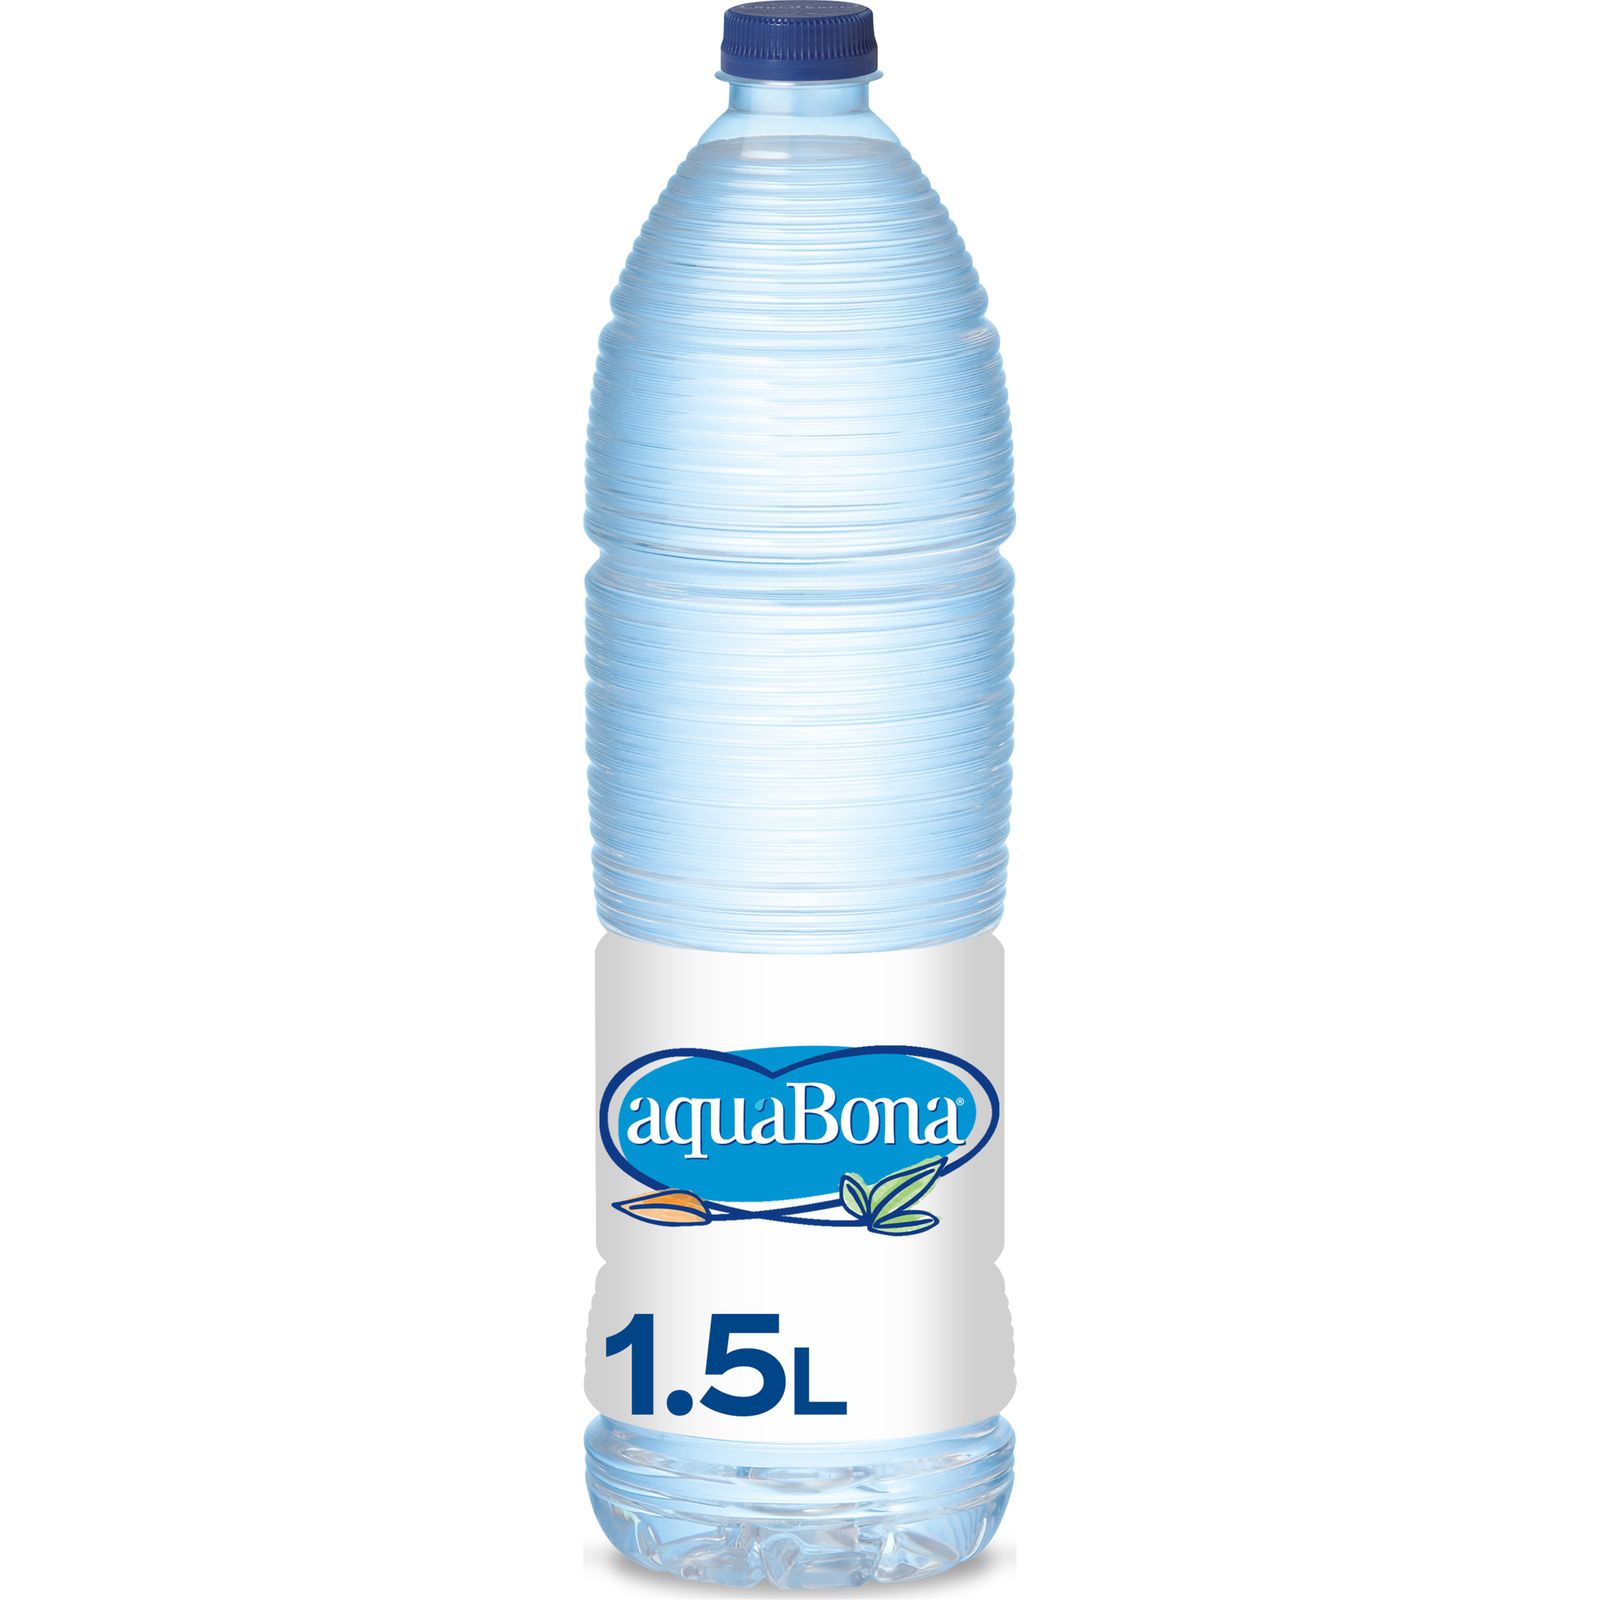 Botella agua mineral 1 litro